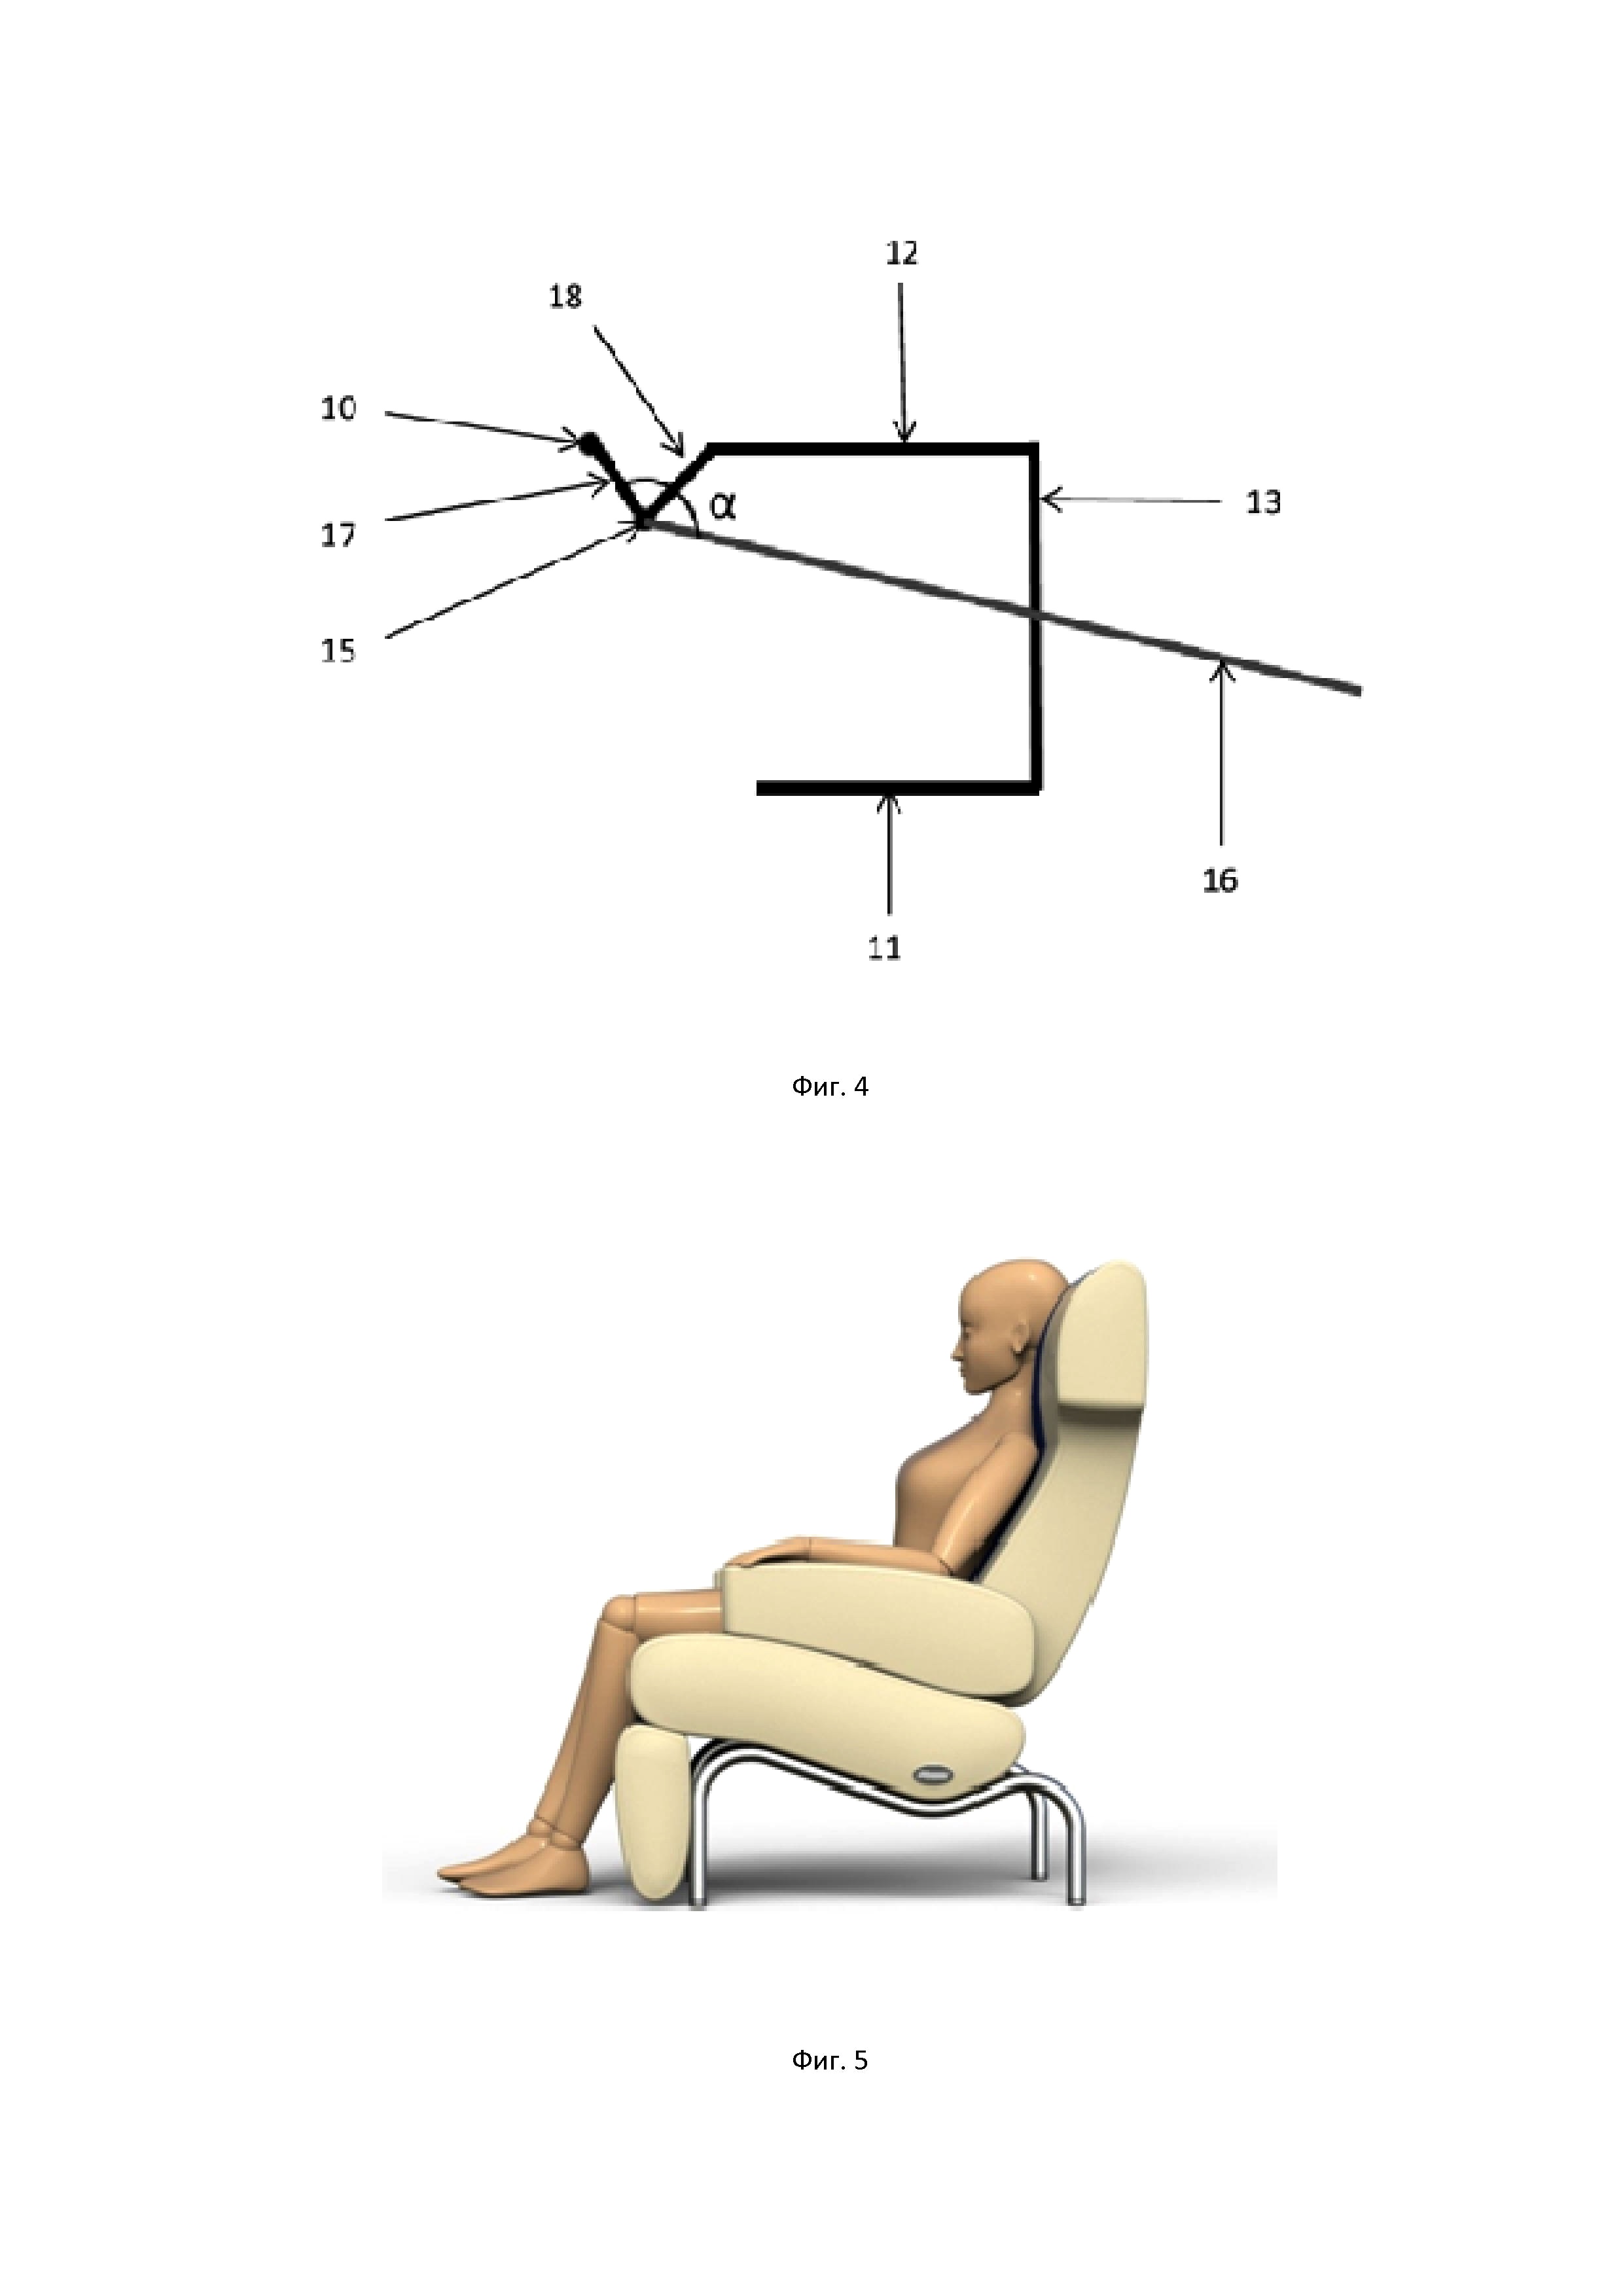 Механизм для поднятия ног в кресле